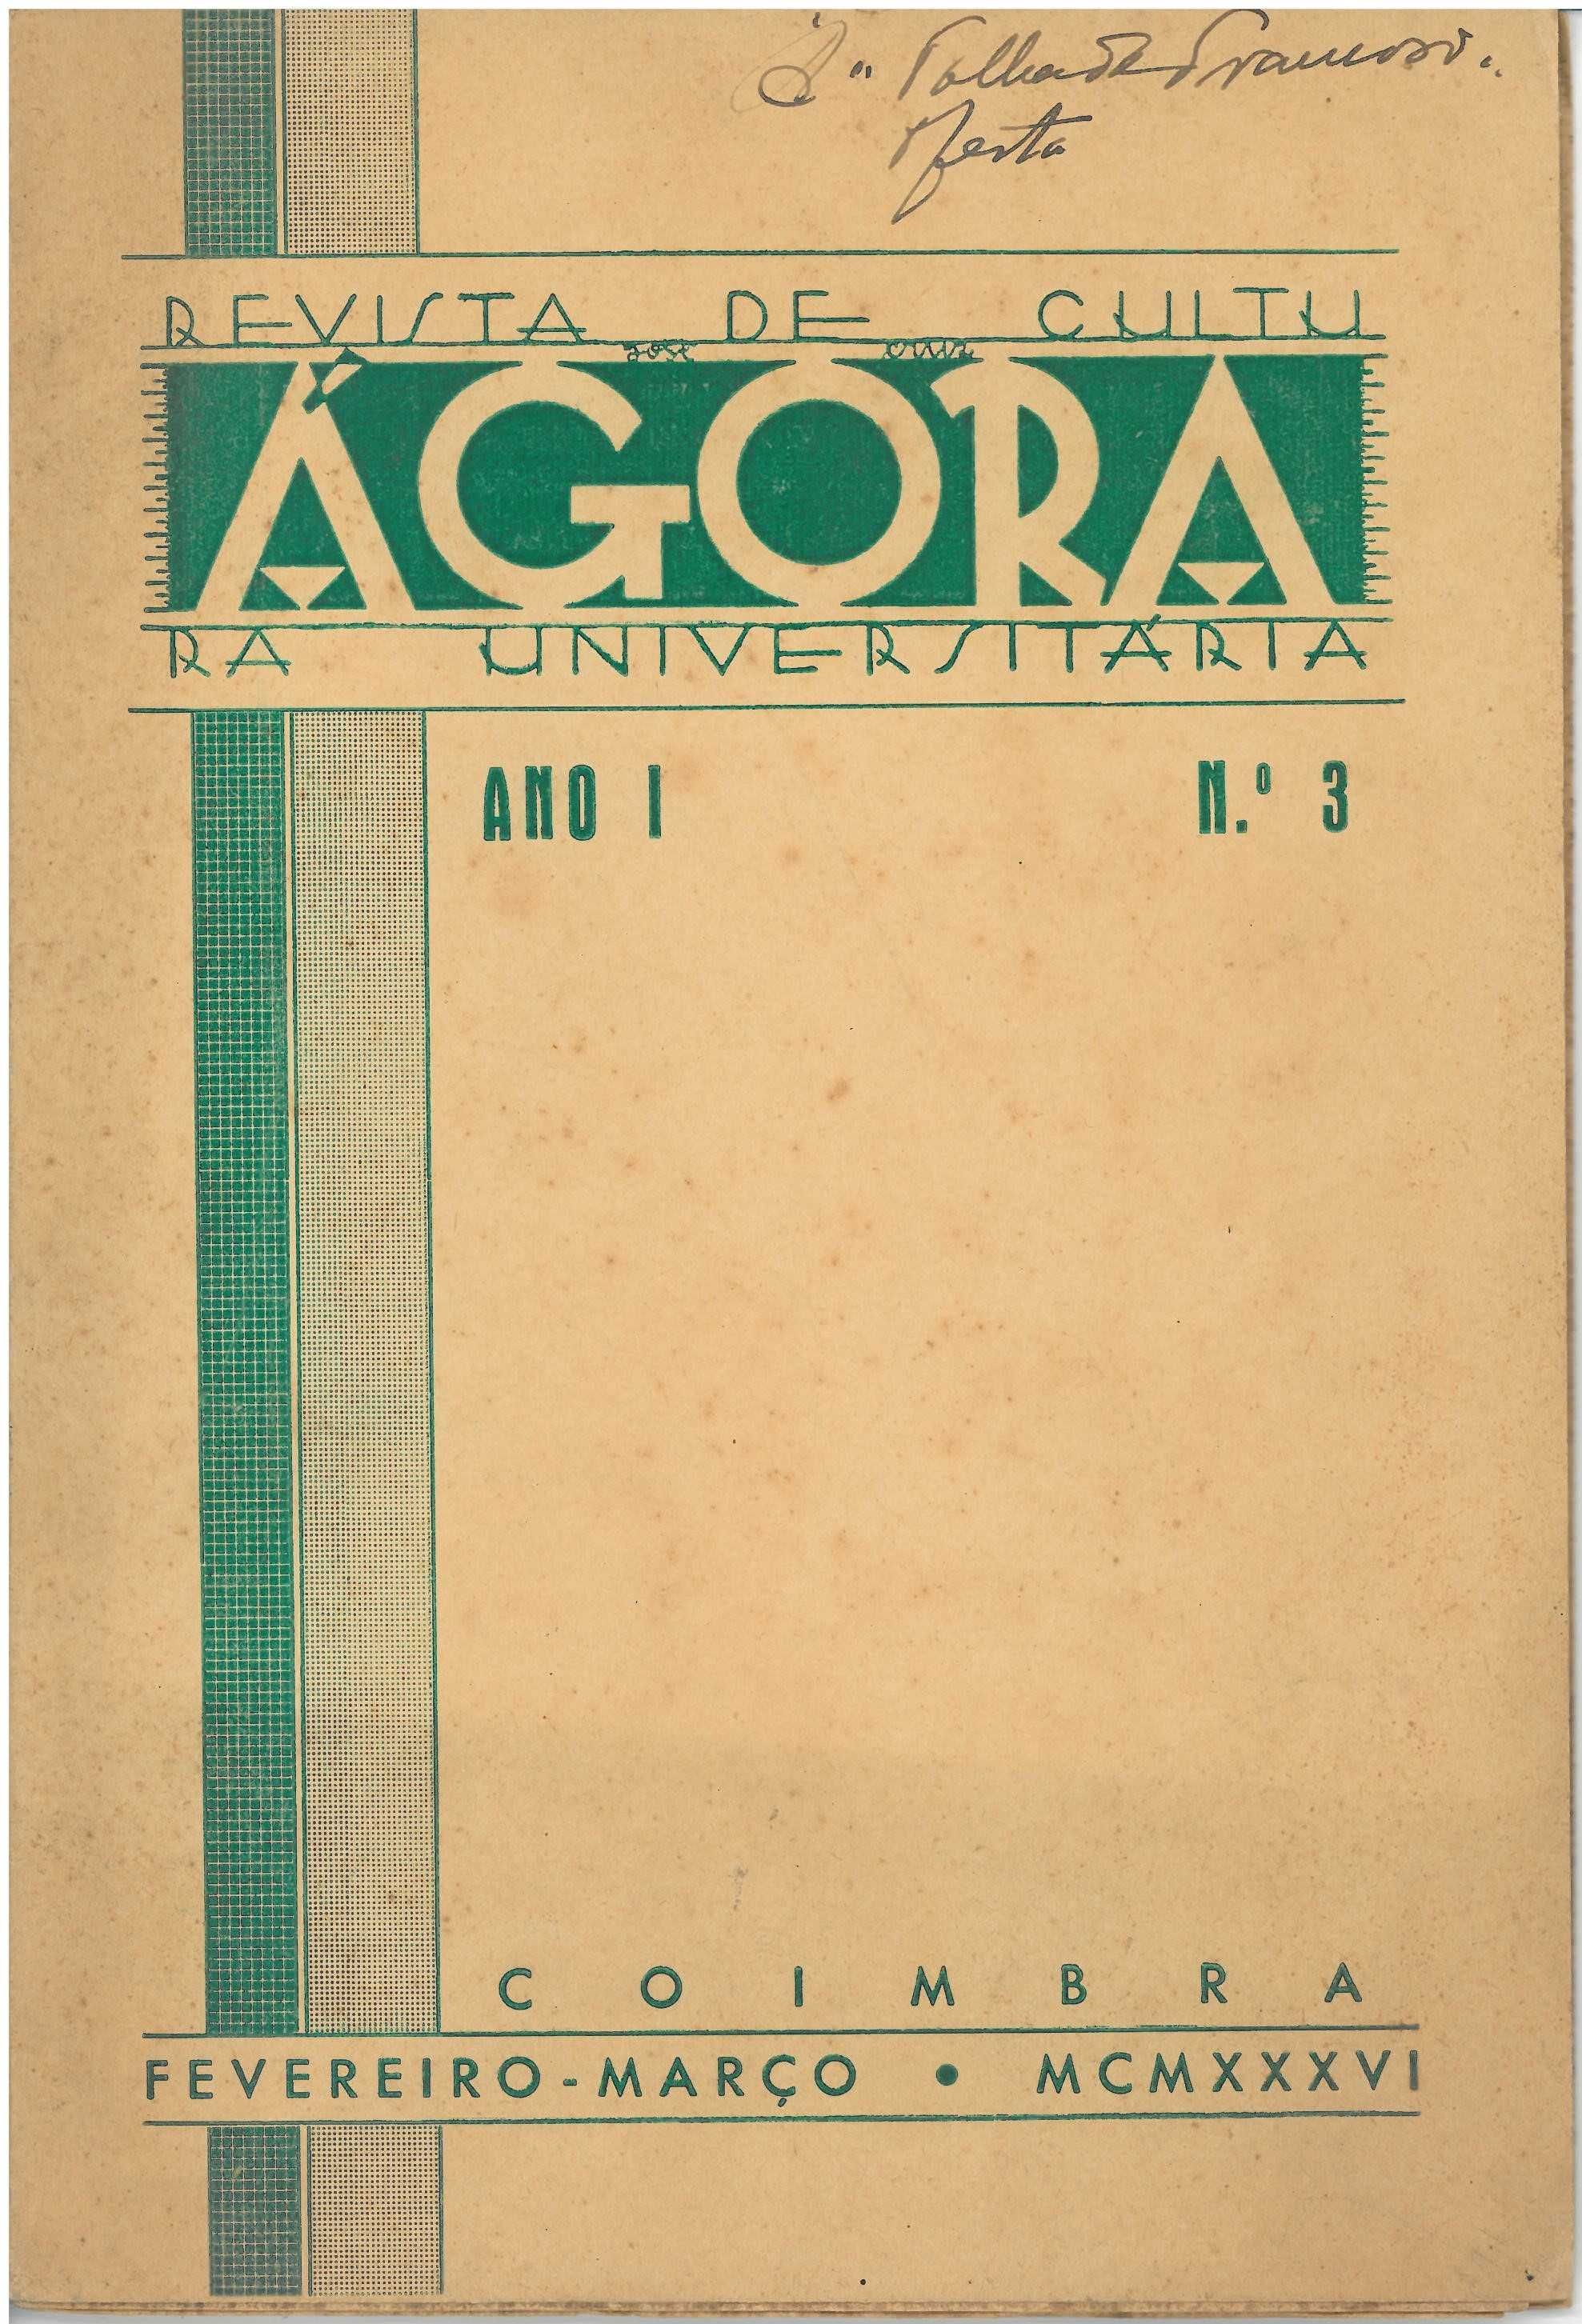 Ágora. Revista de Cultura Universitária